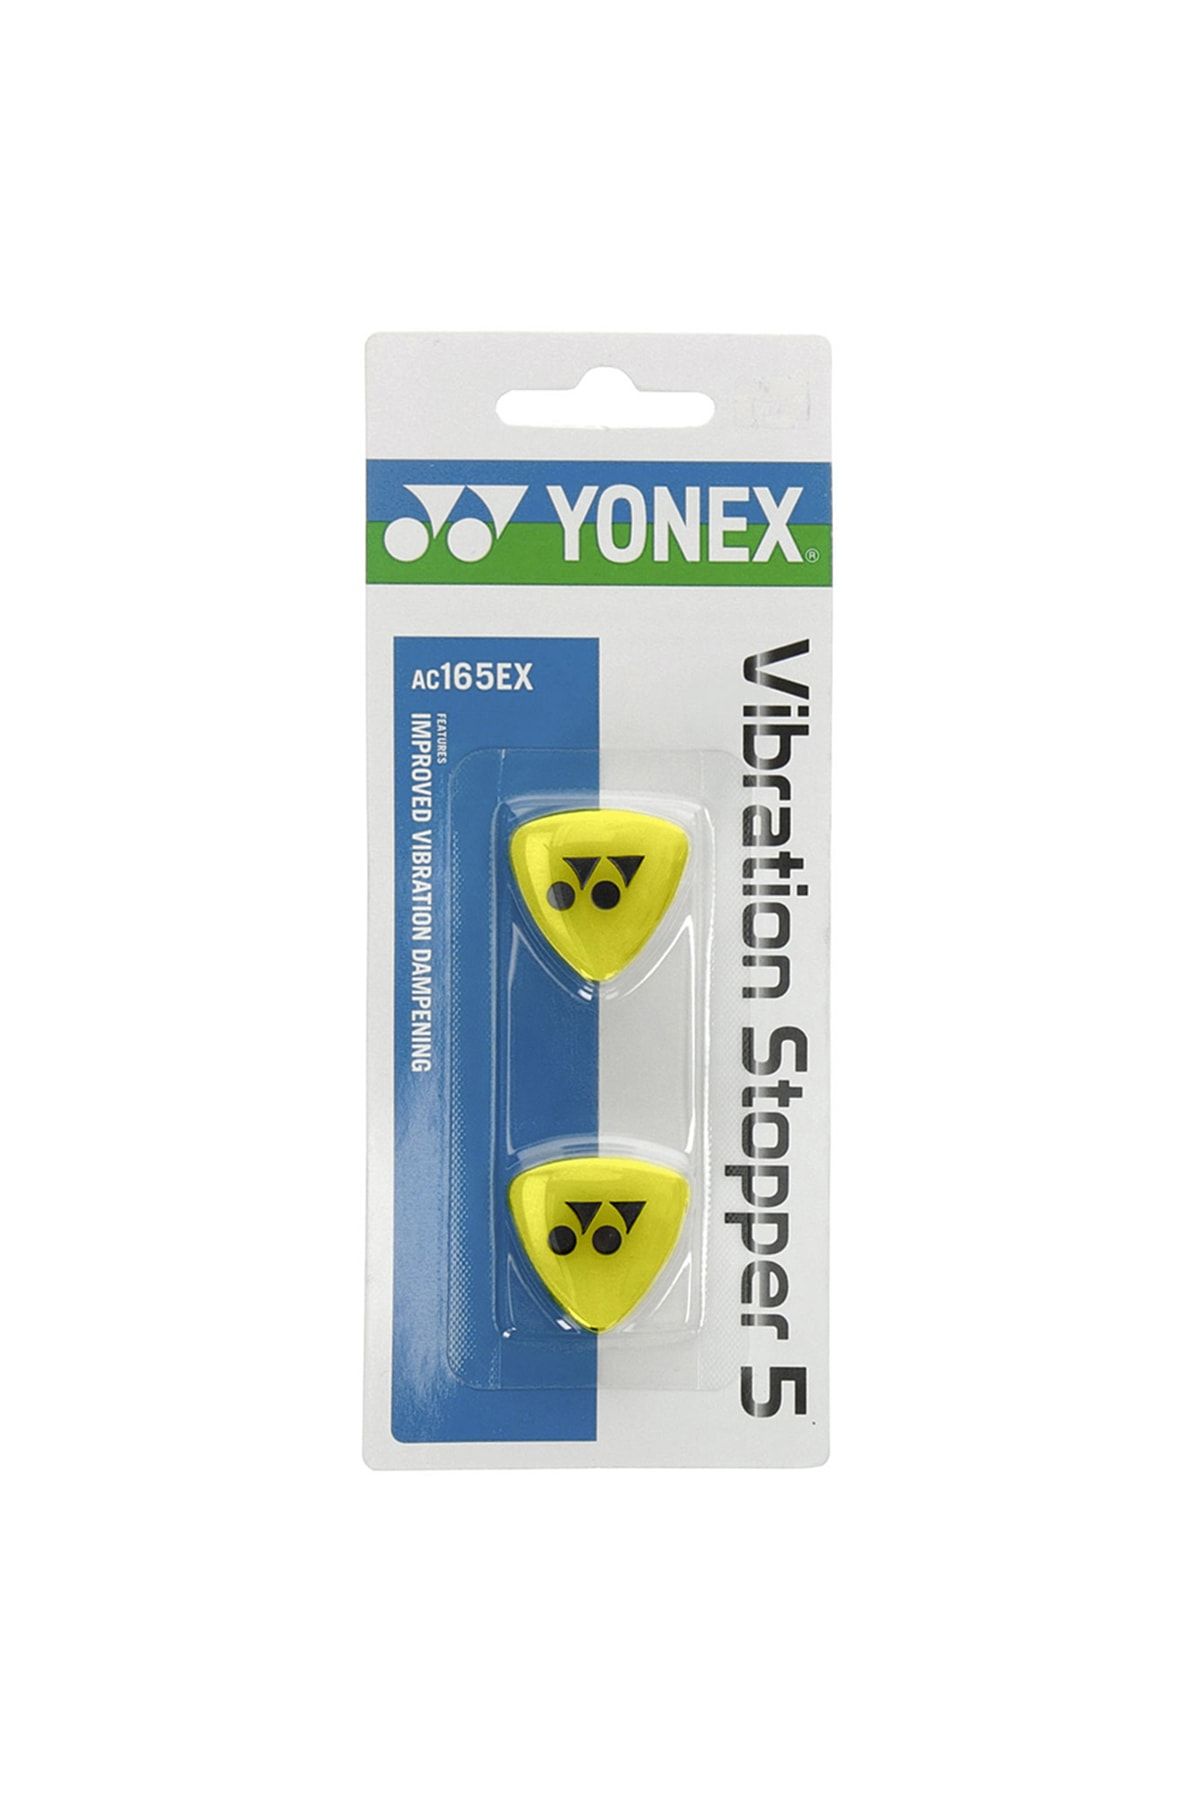 Yonex Ac165ex Tenis Raketi Titreşim Önleyici Sarı